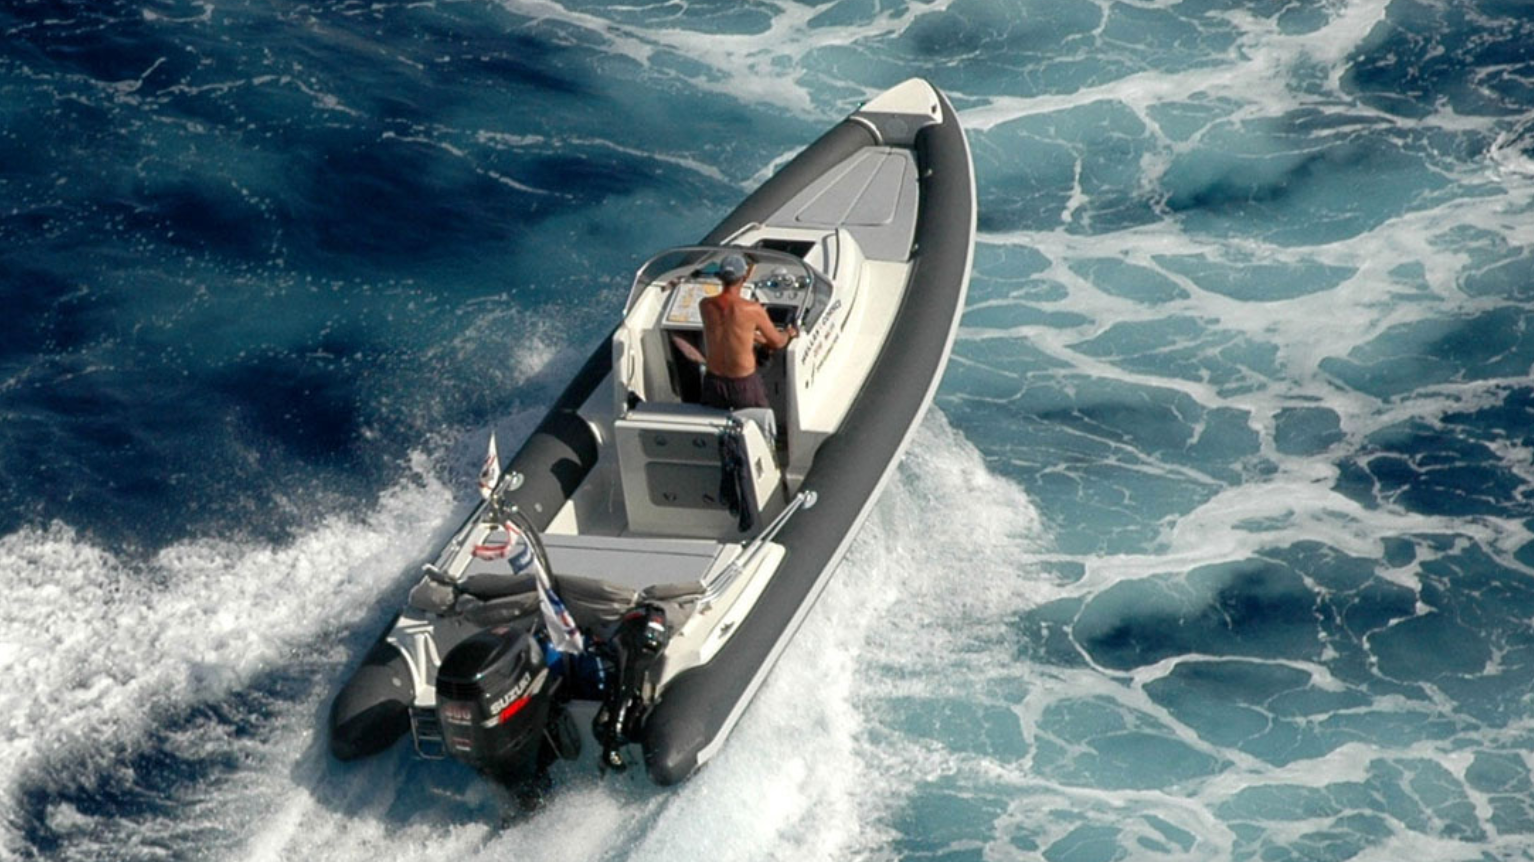 Rigid Hull Inflatable Boat, RIB, running in ocean